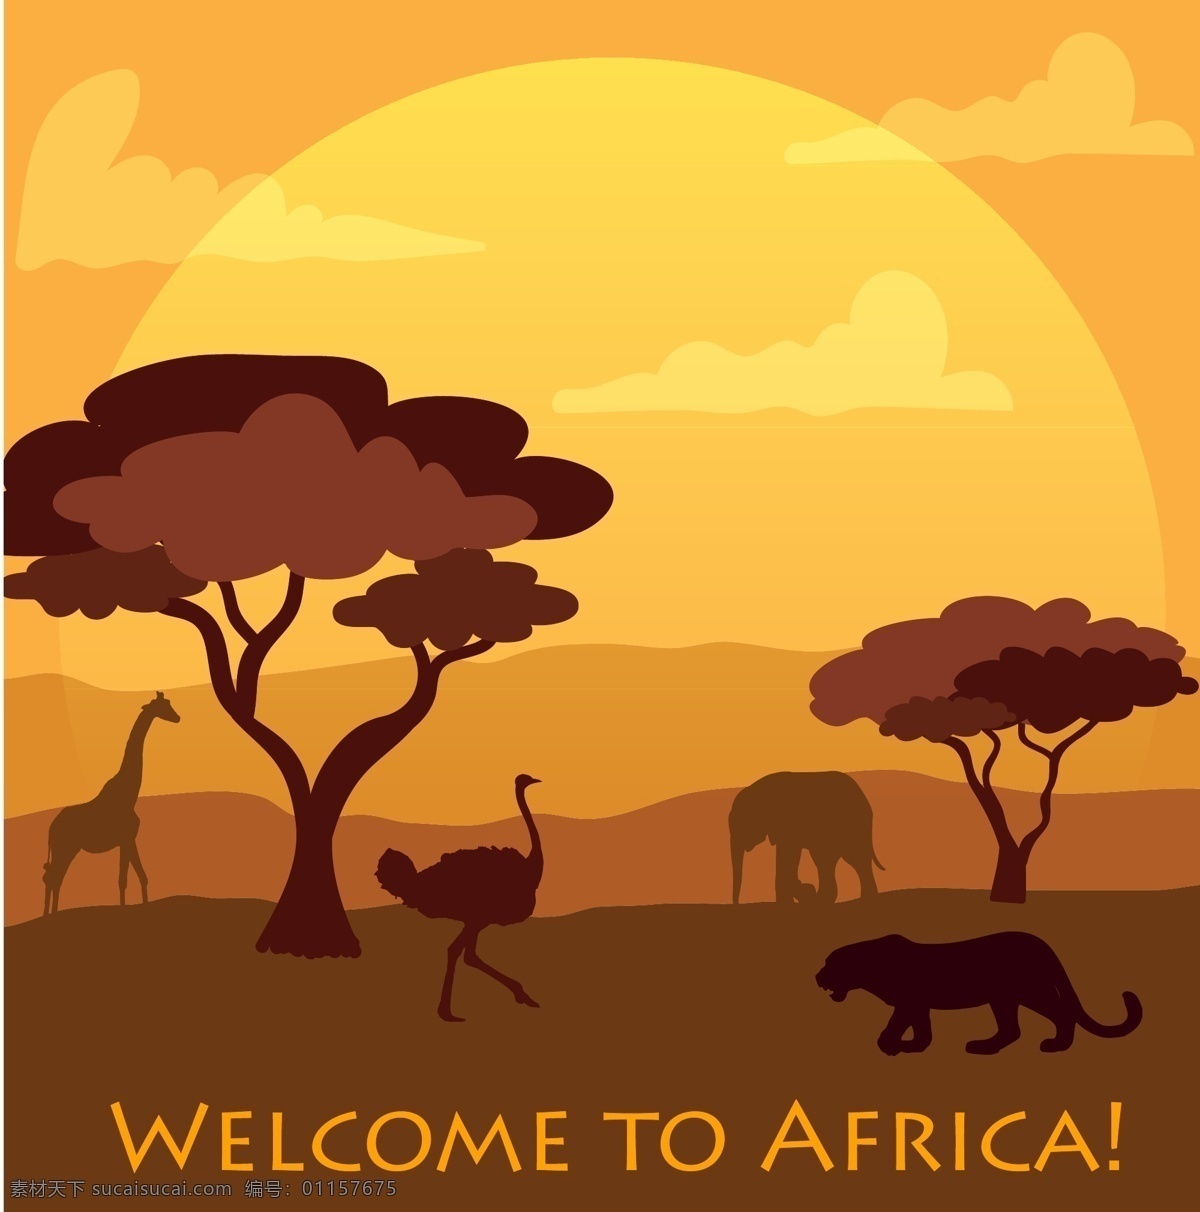 非洲 森林 动物 插画 非洲插画 手绘插画 矢量插画 矢量素材 民族风 复古插画 非洲风采 非洲森林 动物插画